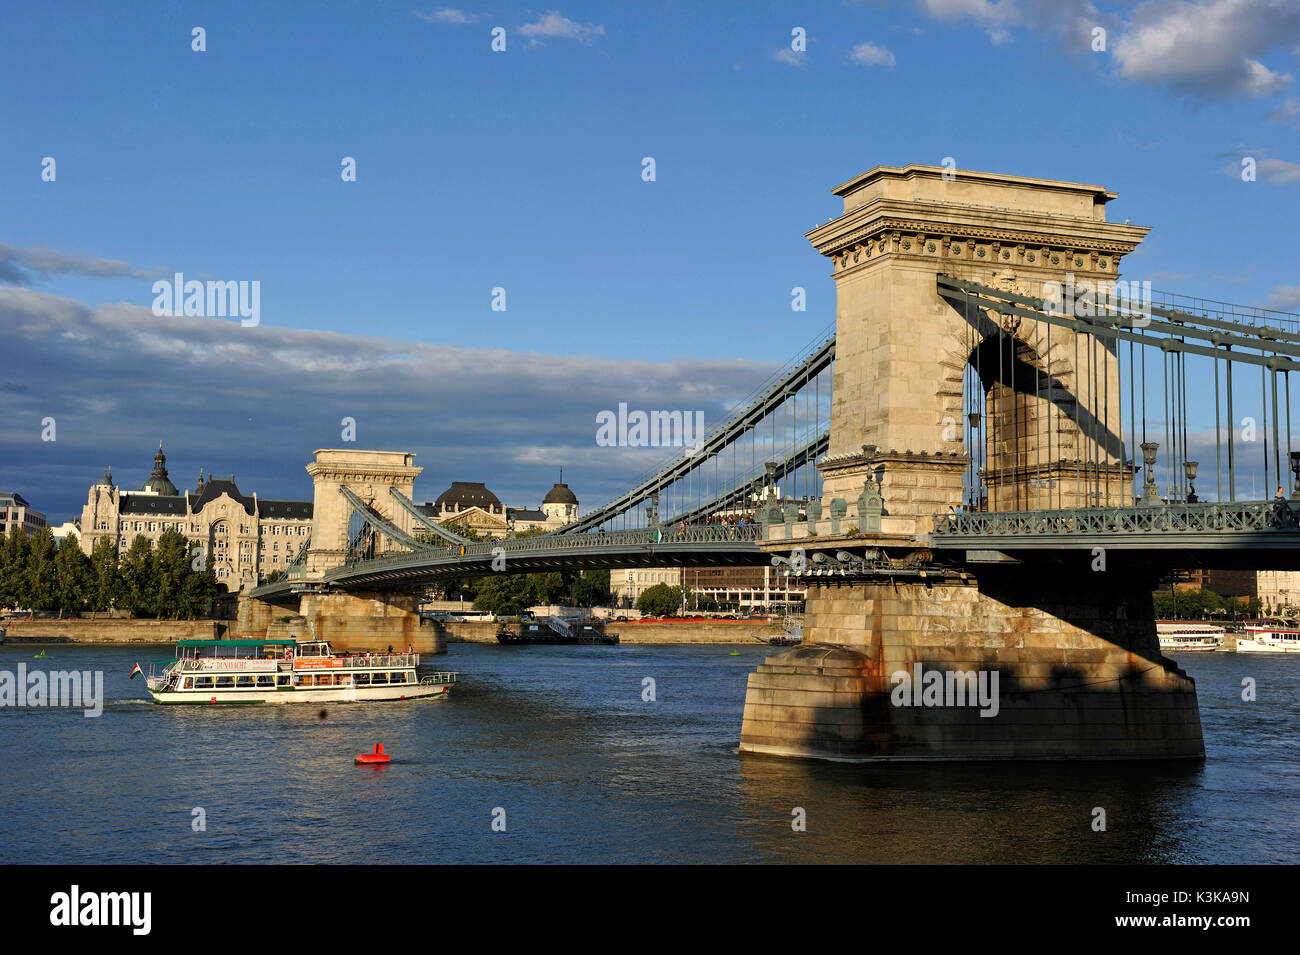 Ungarn, Budapest, die Donau, die Kettenbrücke (Szechenyi Lanchid) als Weltkulturerbe von der UNESCO und der Gresham Palast aufgeführt Stockfoto